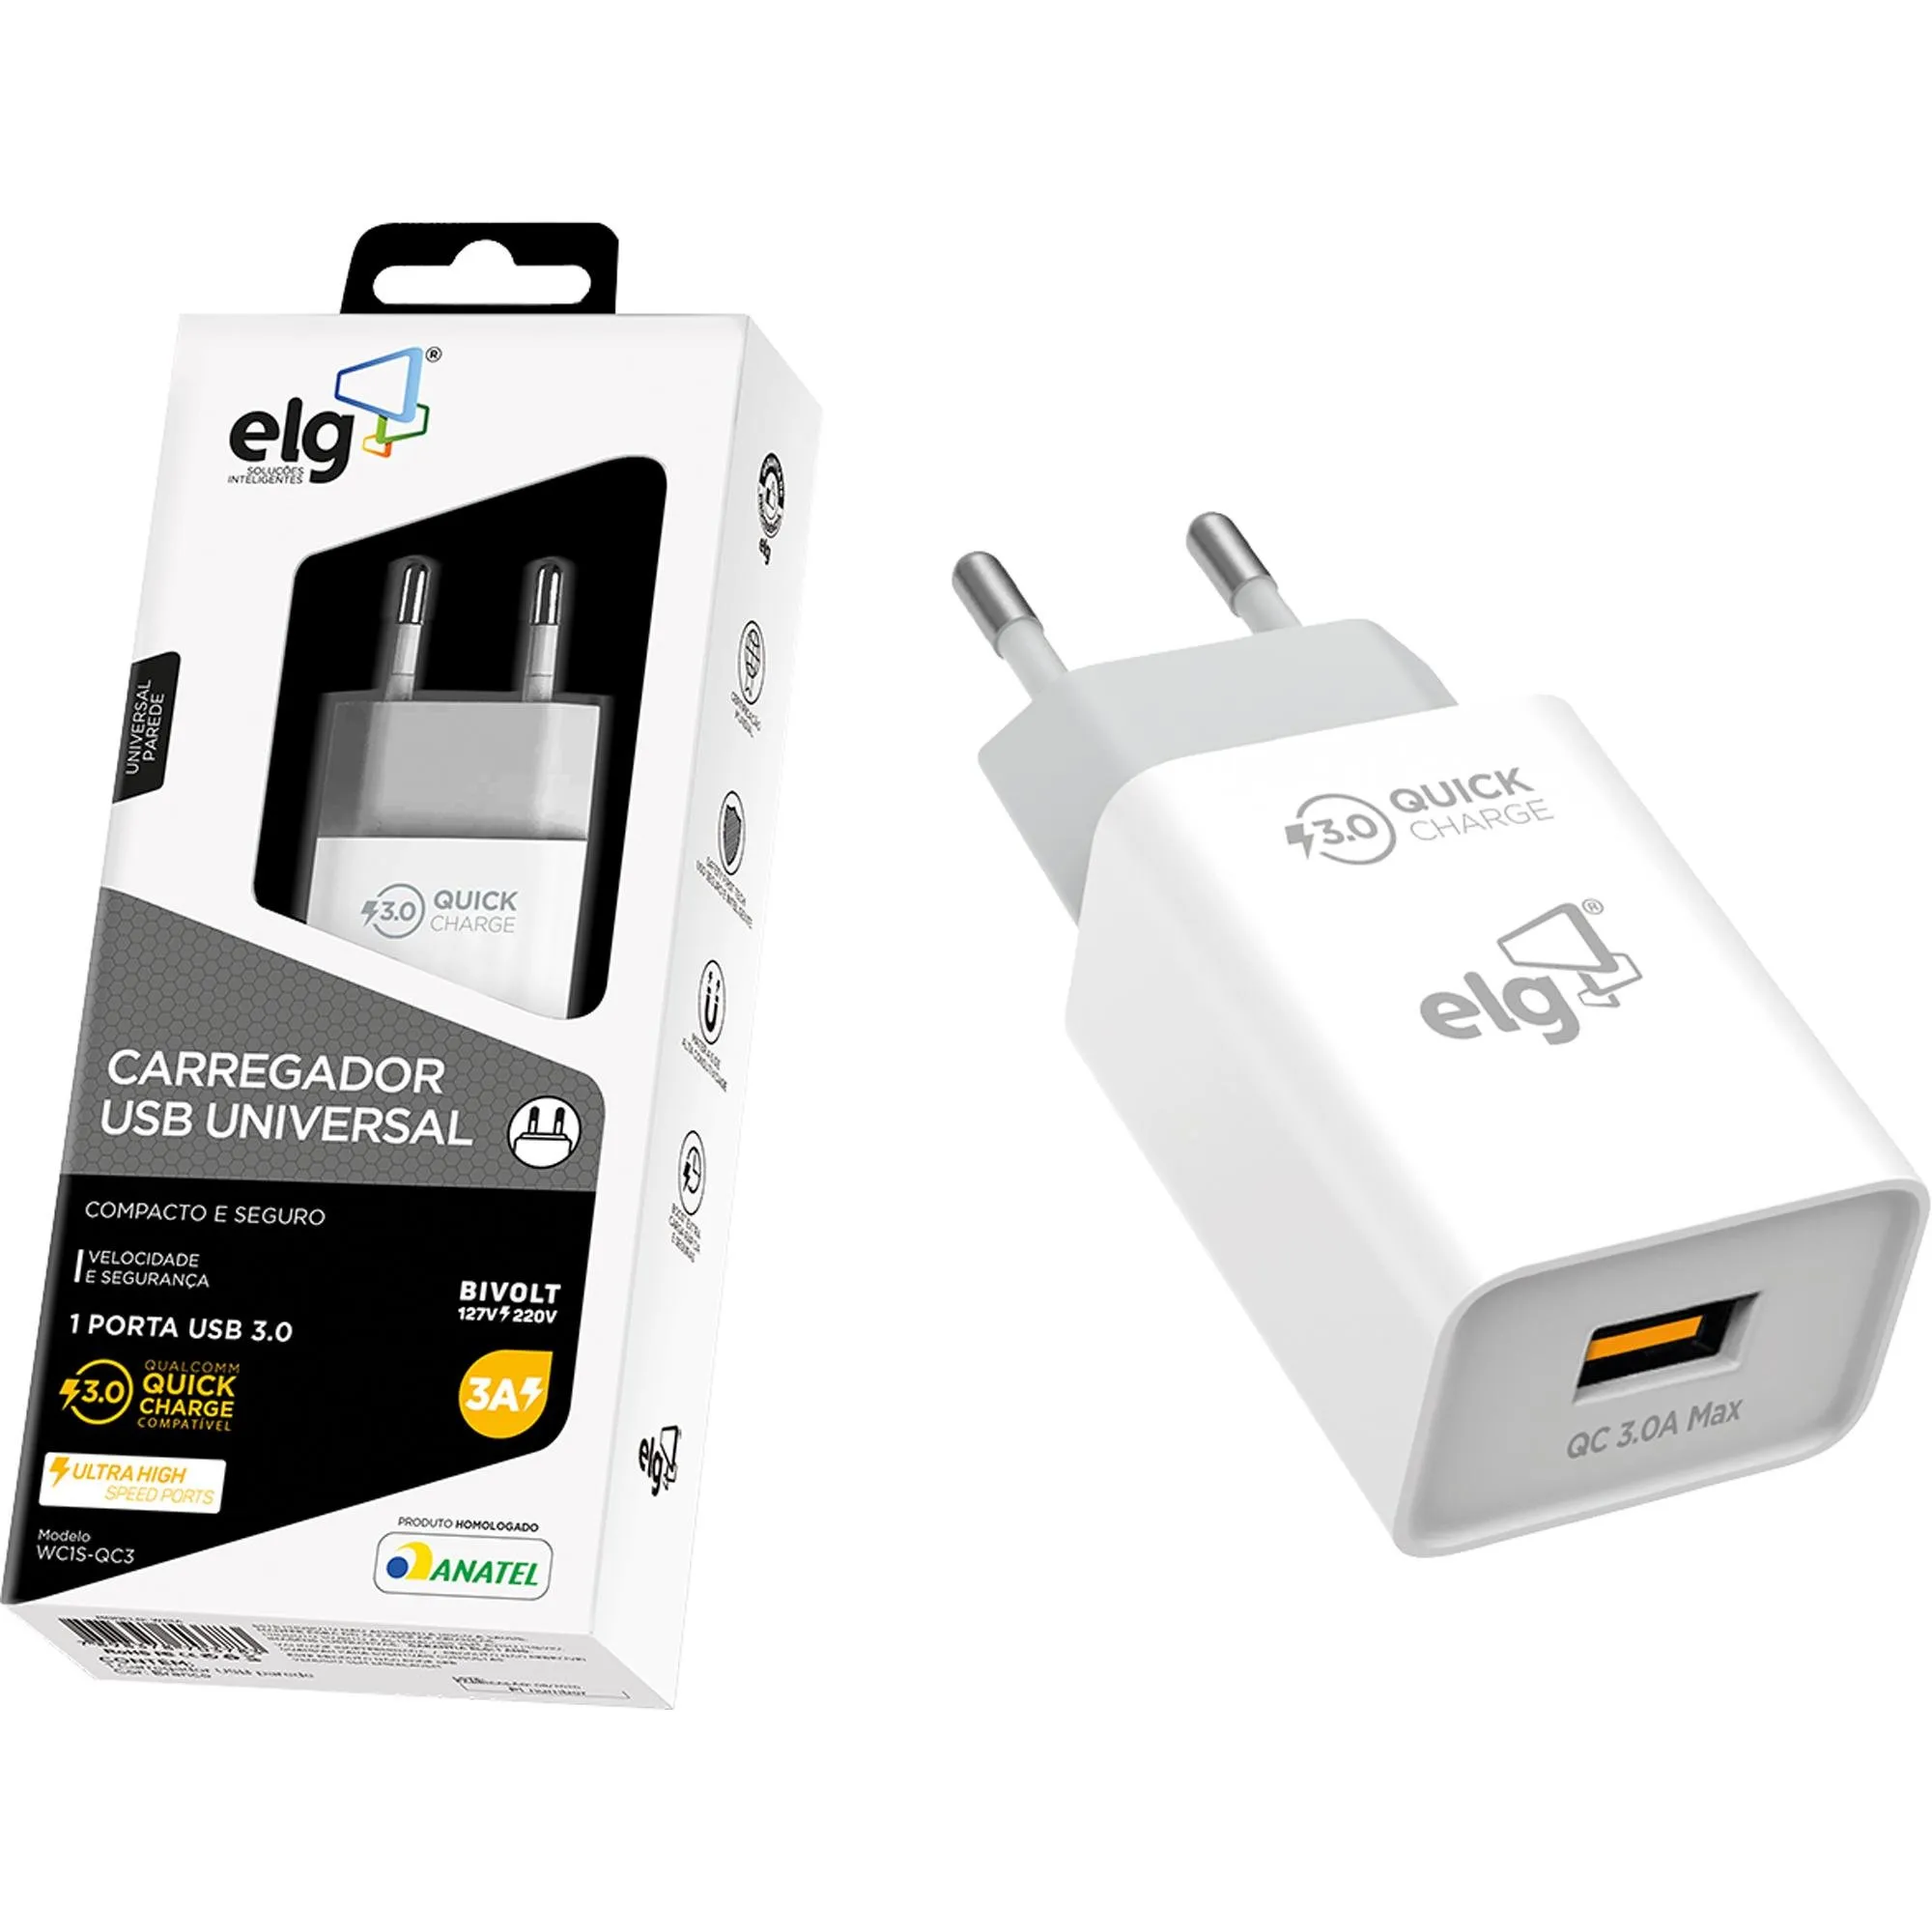 Carregador USB 3A WC1S-QC3 Branco ELG por 57,99 à vista no boleto/pix ou parcele em até 2x sem juros. Compre na loja Mundomax!